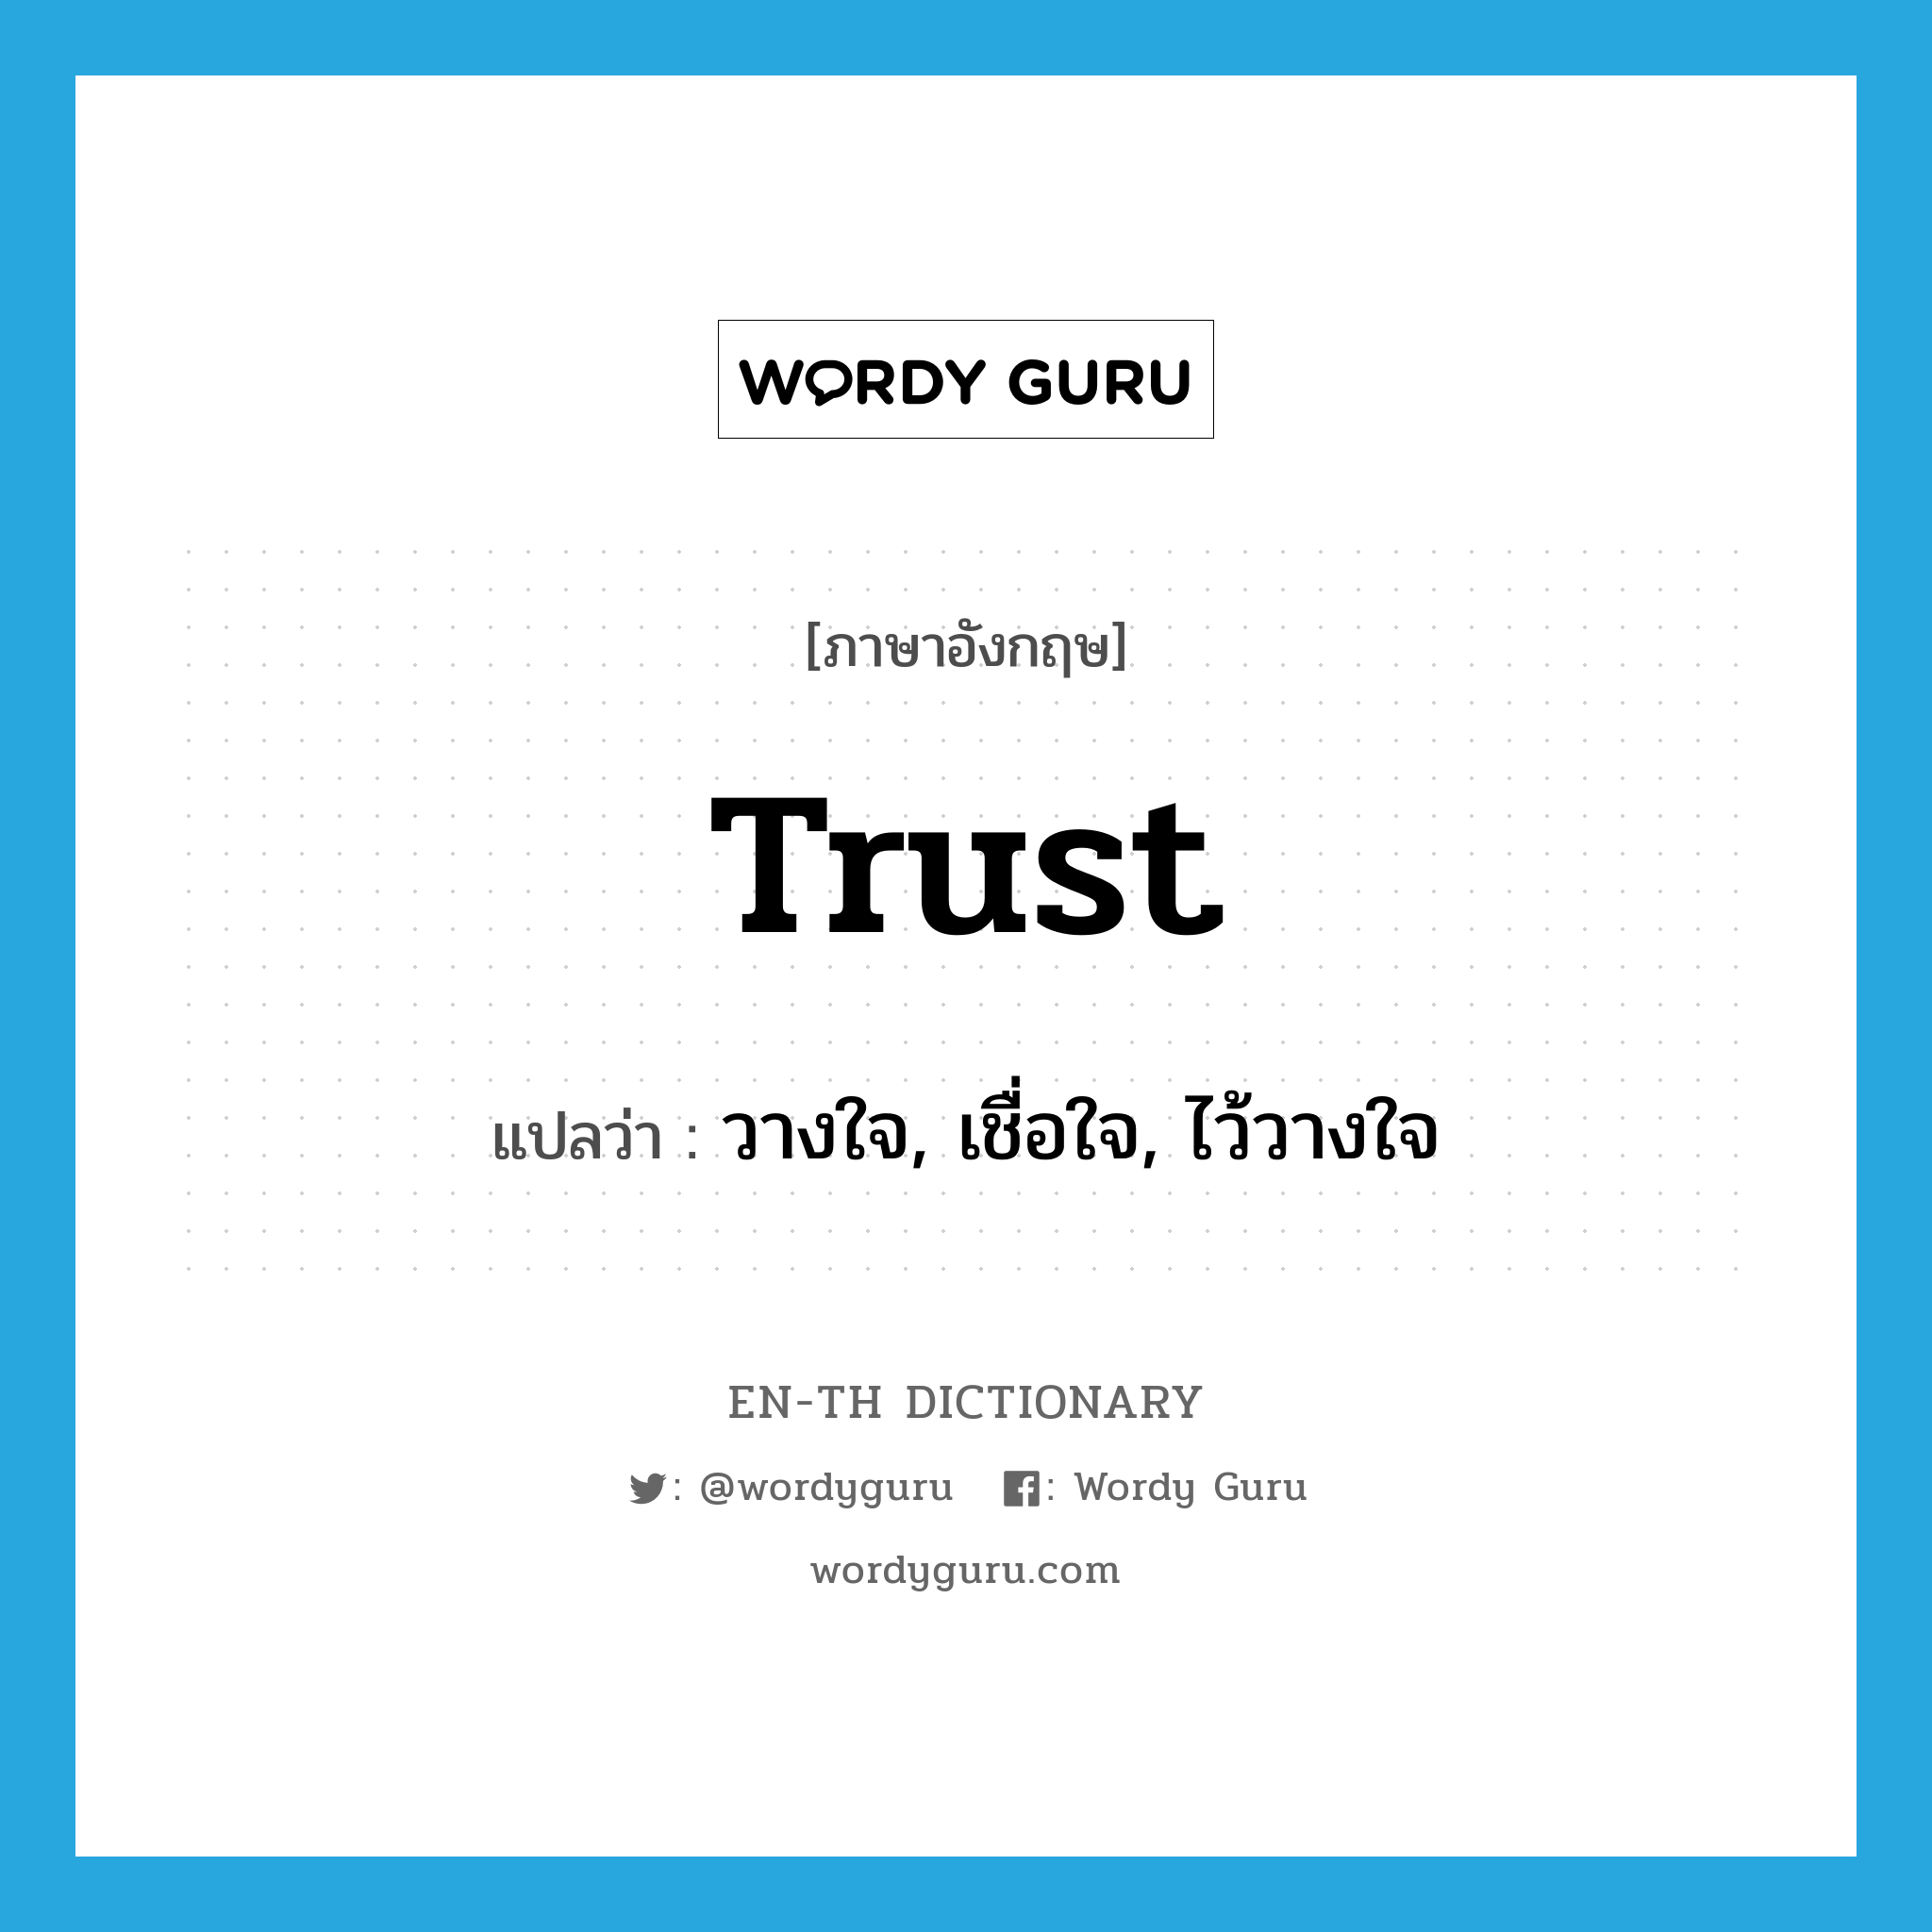 วางใจ, เชื่อใจ, ไว้วางใจ ภาษาอังกฤษ?, คำศัพท์ภาษาอังกฤษ วางใจ, เชื่อใจ, ไว้วางใจ แปลว่า trust ประเภท VI หมวด VI